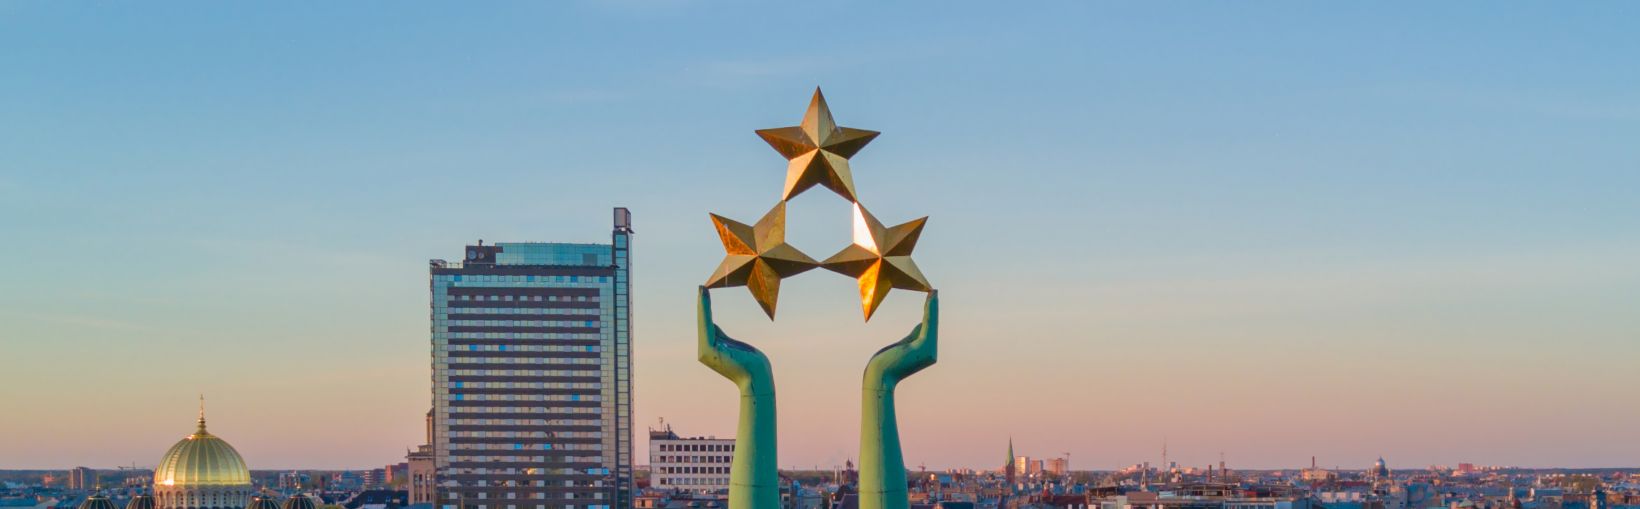 Splendide coucher de soleil à Riga aux alentours de la statue de la Liberté - Milda. La Liberté en Lettonie. Statue de la Liberté tenant trois étoiles au-dessus de la ville.